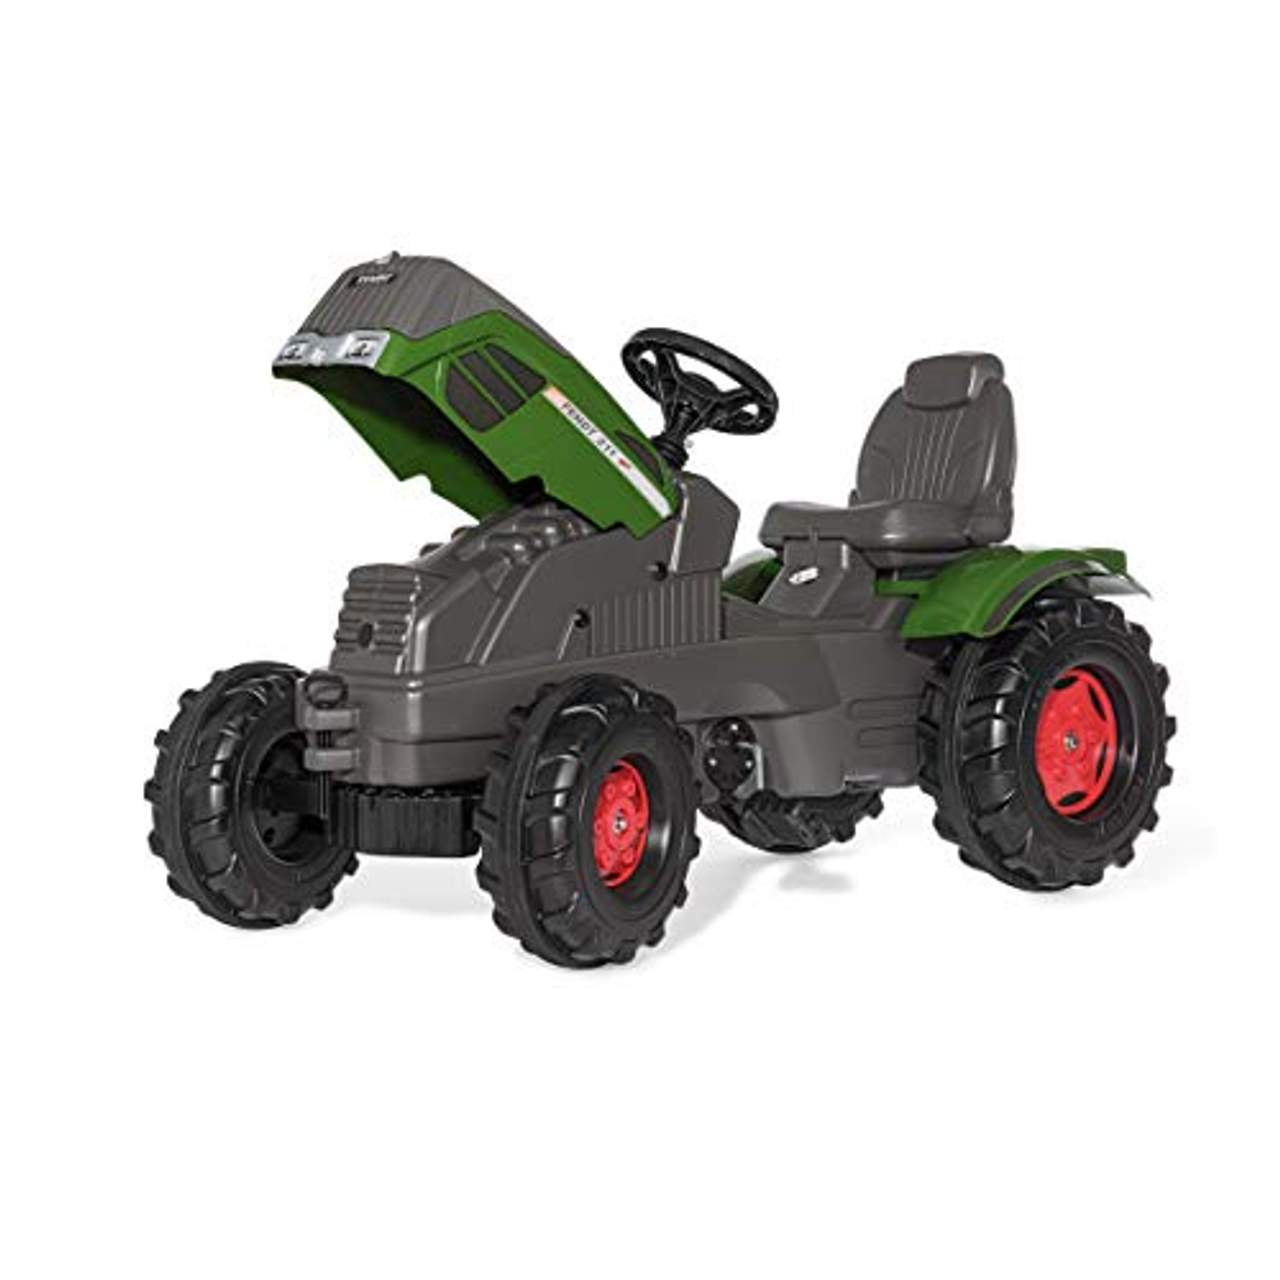 Rolly Toys Traktor rollyFarmtrac Fendt 211 Vario